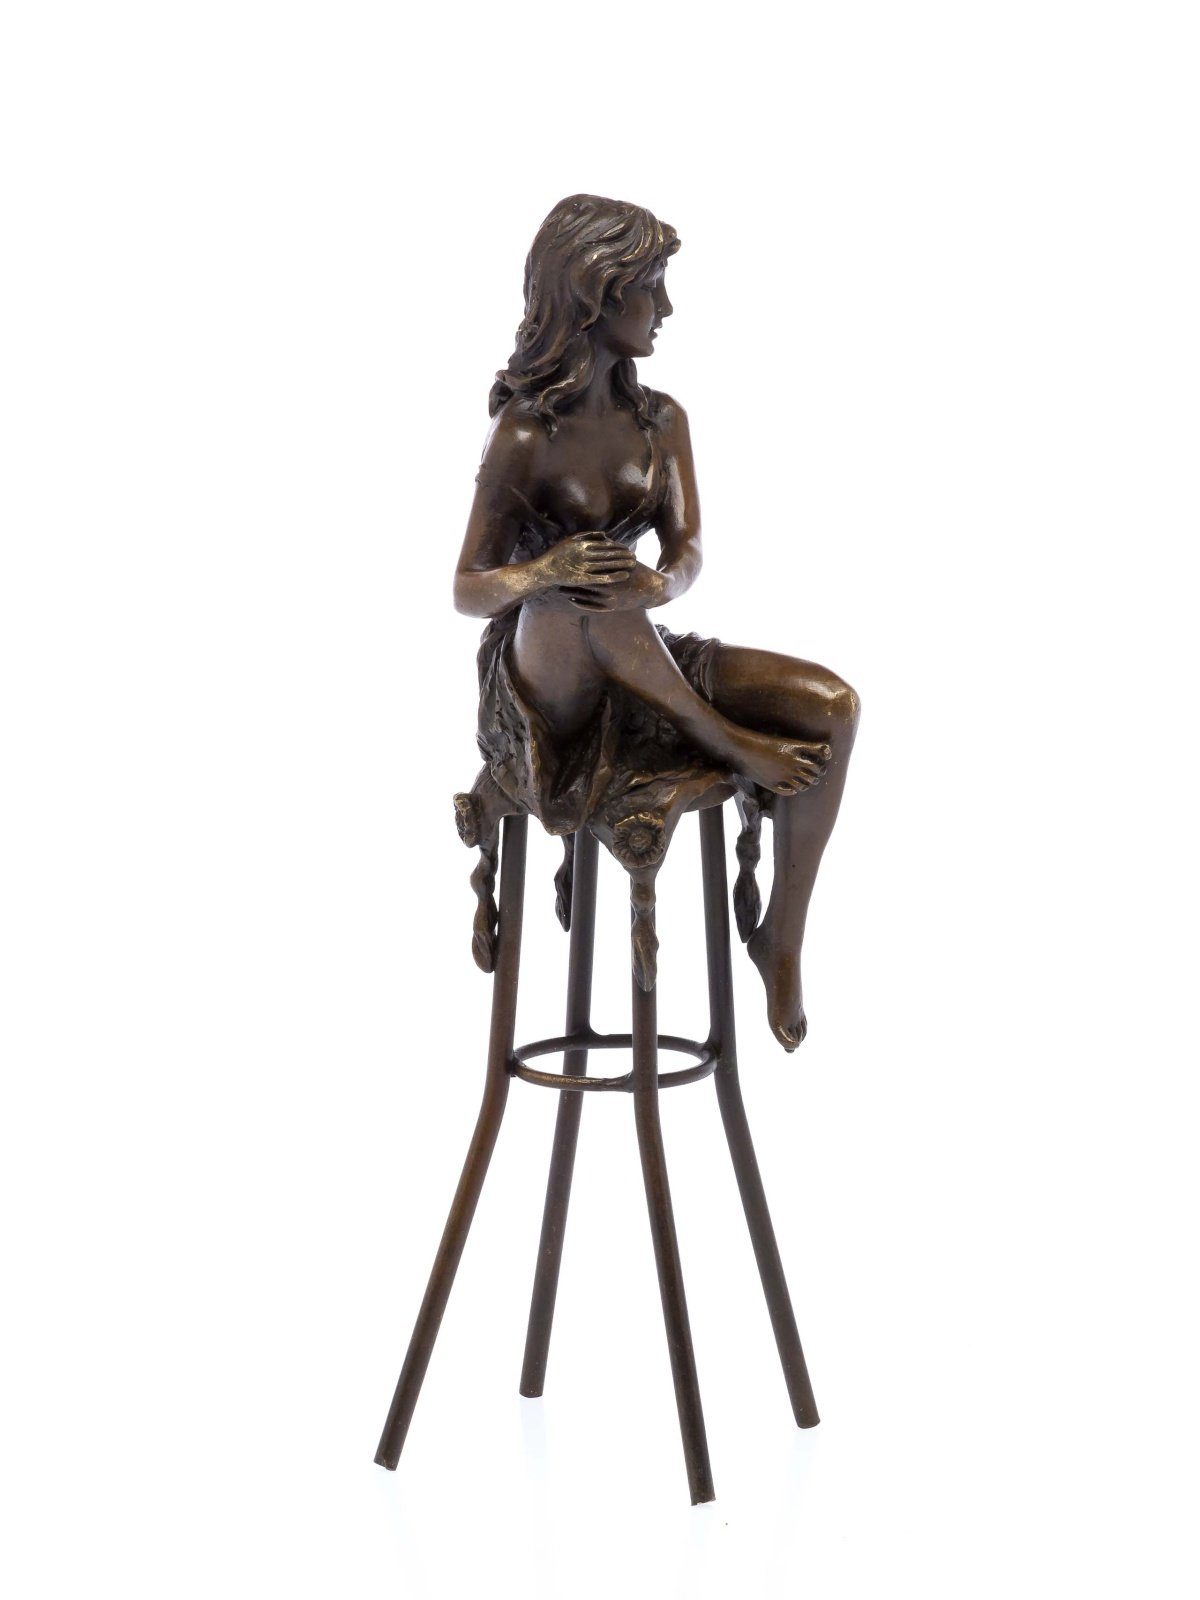 scu auf Barhocker Akt Aubaho Skulptur Bronzefigur erotische Bronze Frau Skulptur Kunst